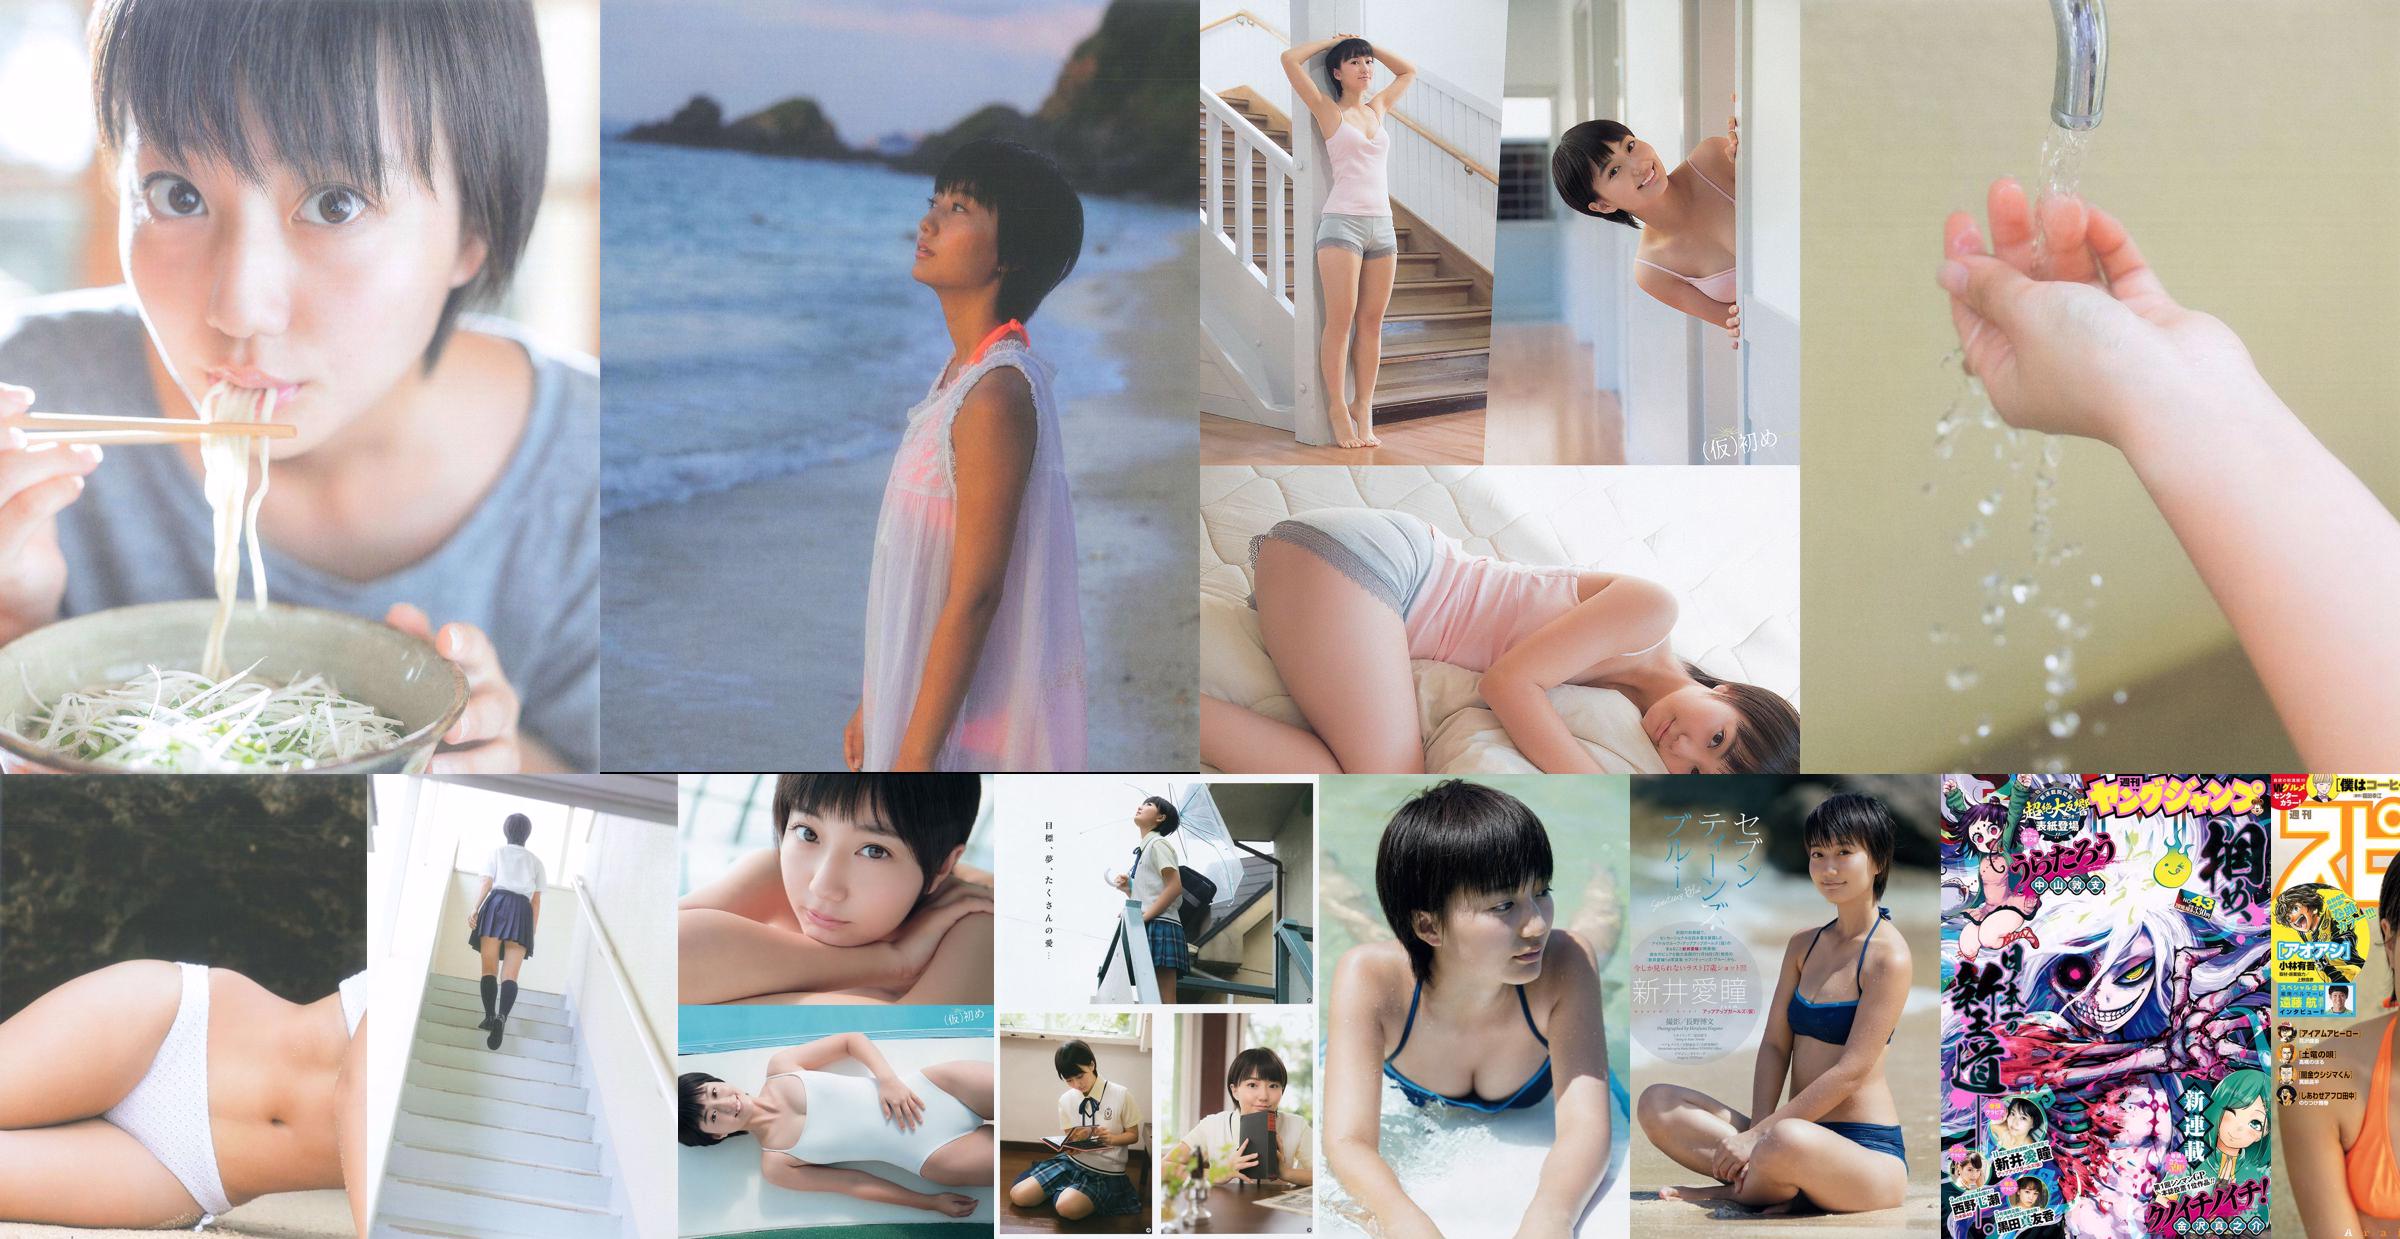 [Молодой Ганган] Манами Араи Мари Ямачи 2015 №11 Фотография No.416727 Страница 1